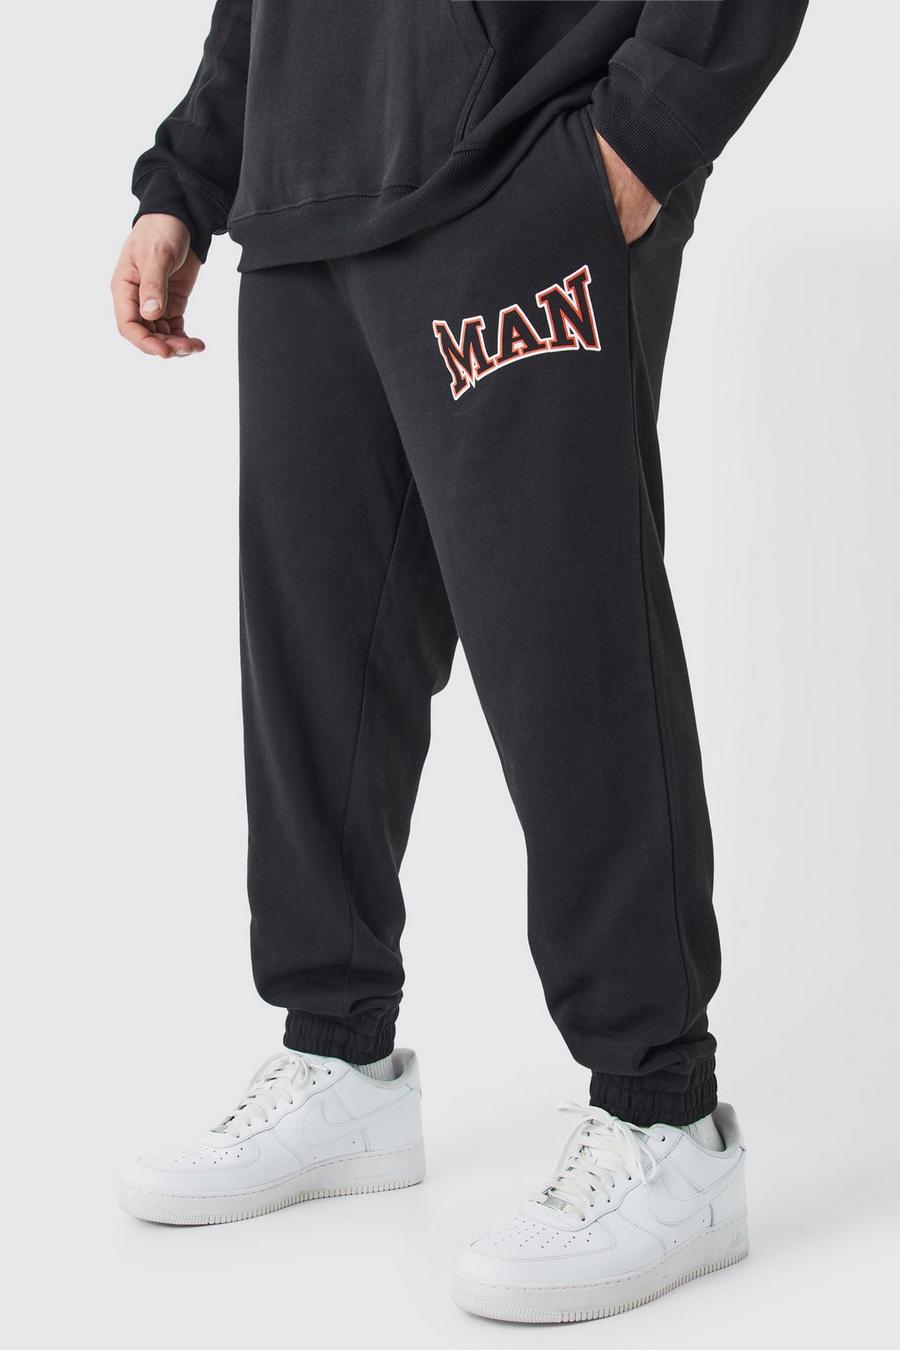 Pantaloni tuta Plus Size Core stile Varsity Man neri, Black image number 1